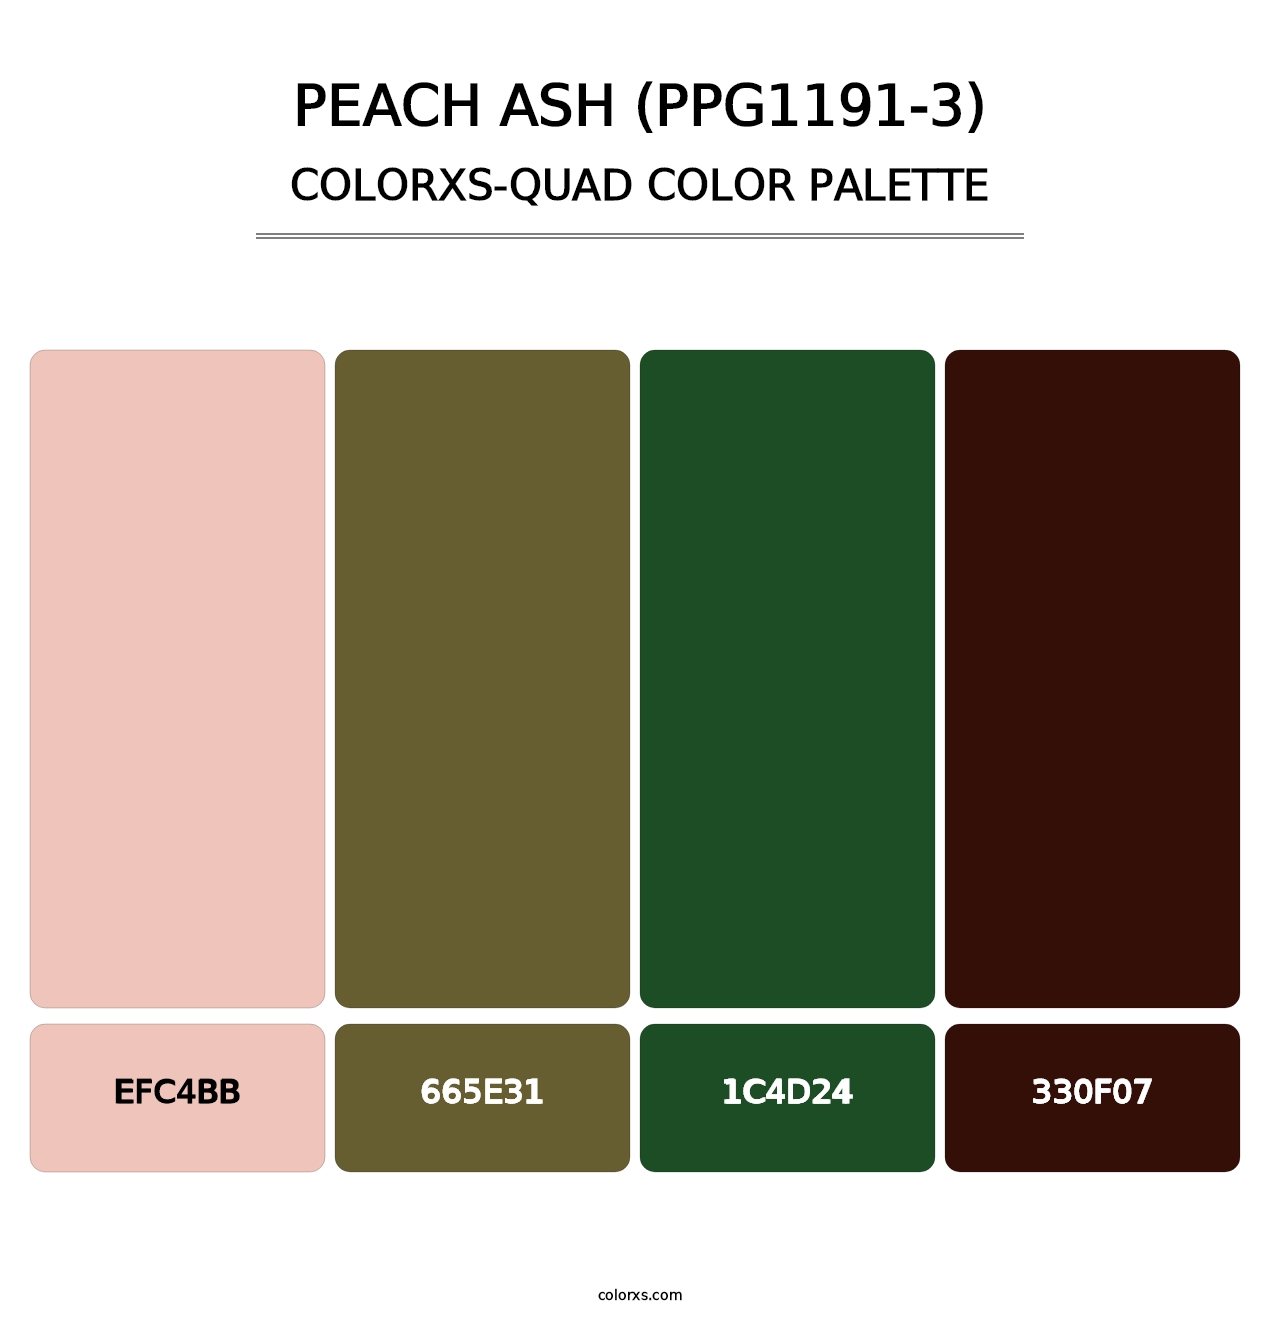 Peach Ash (PPG1191-3) - Colorxs Quad Palette